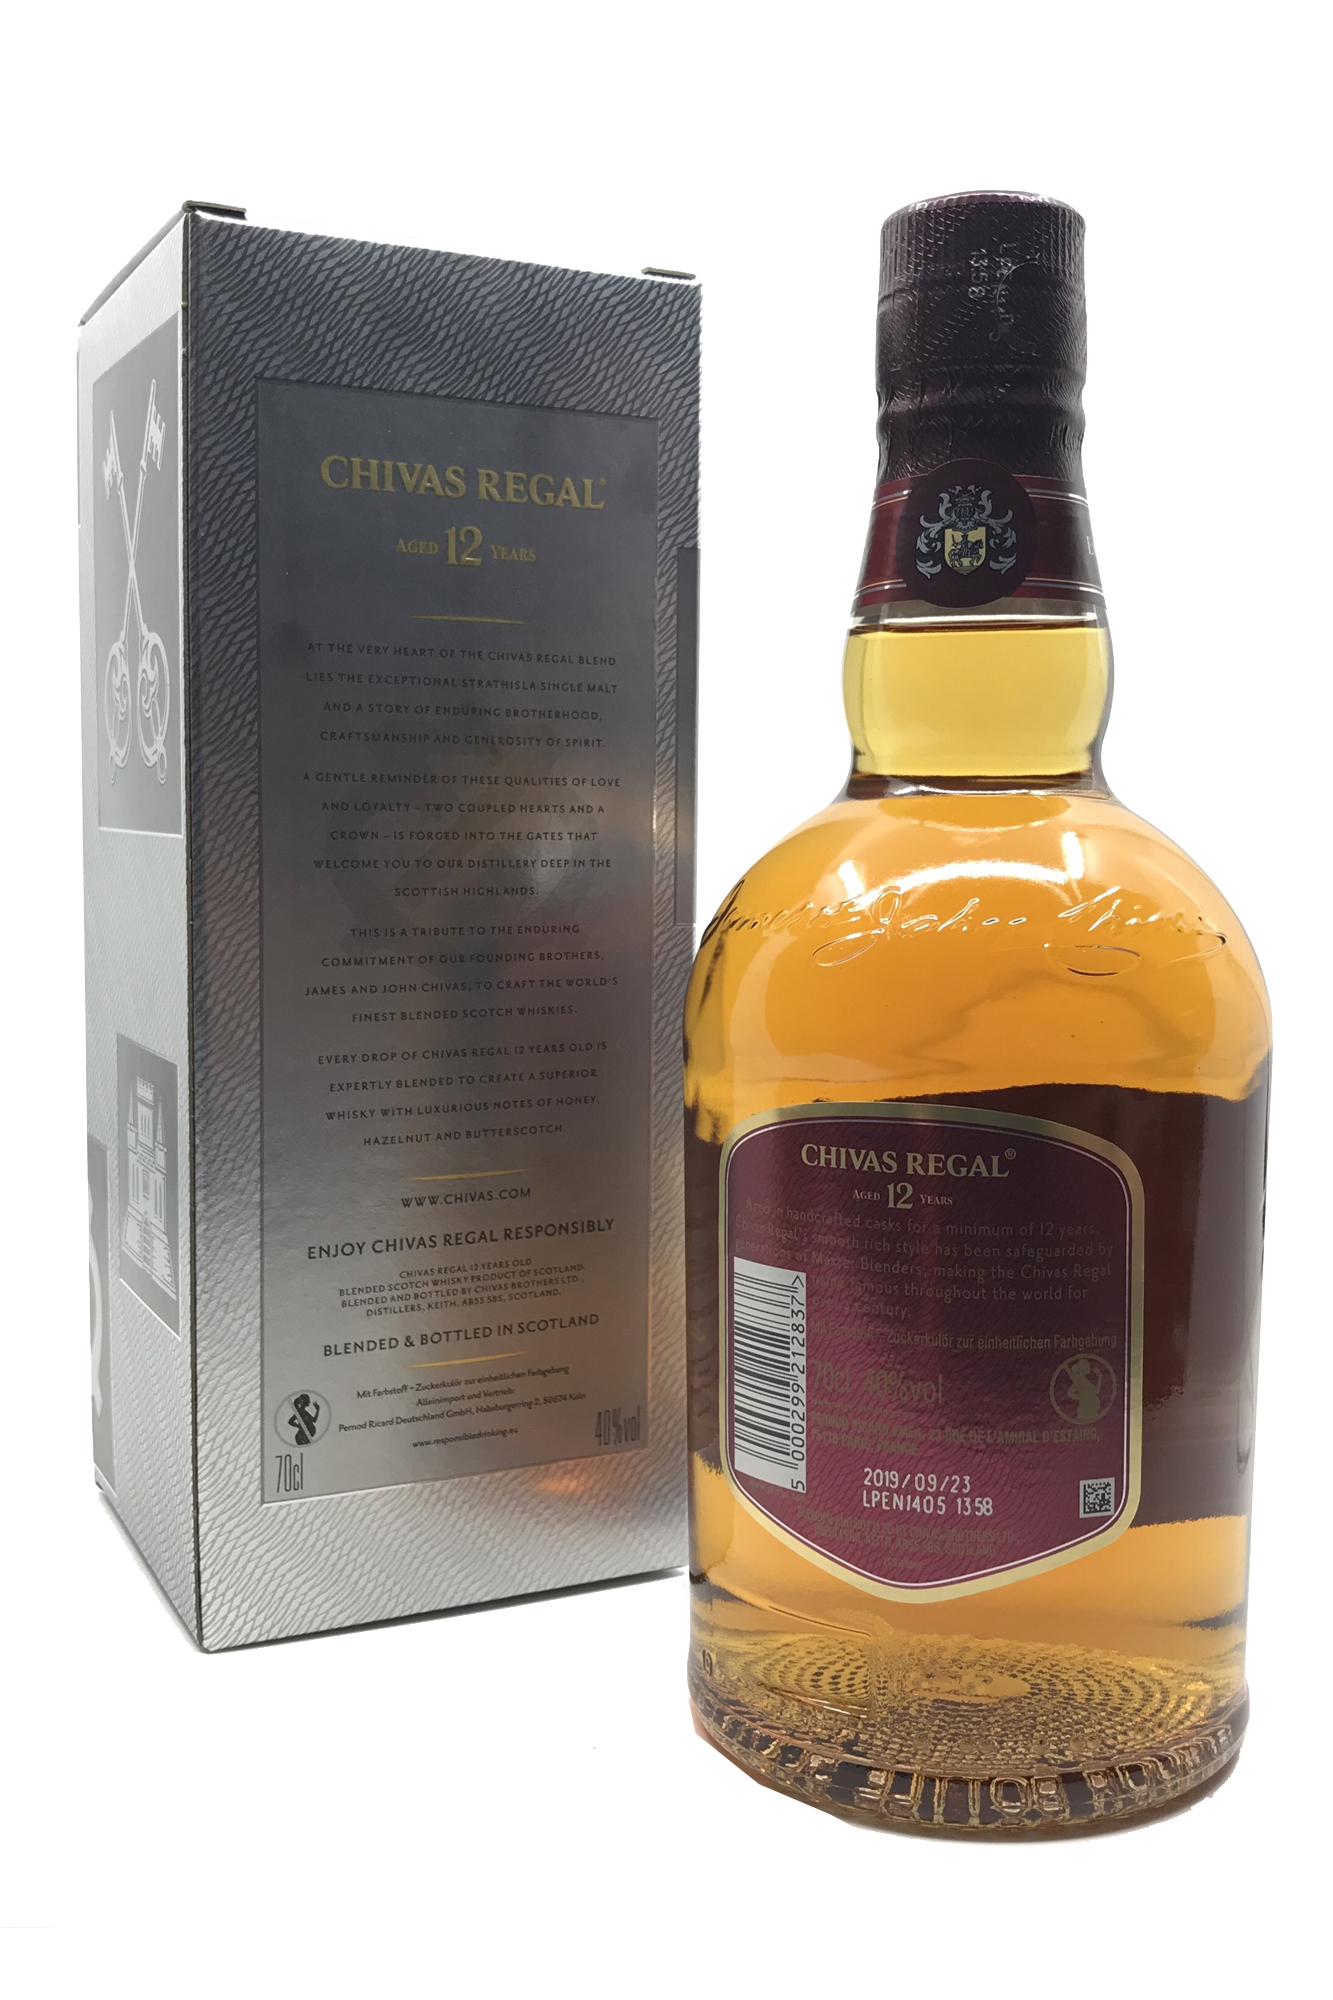 Chivas Regal 12 Jahre Premium Blended Scotch Whisky - 40% vol. Alk. - 0,7l - back